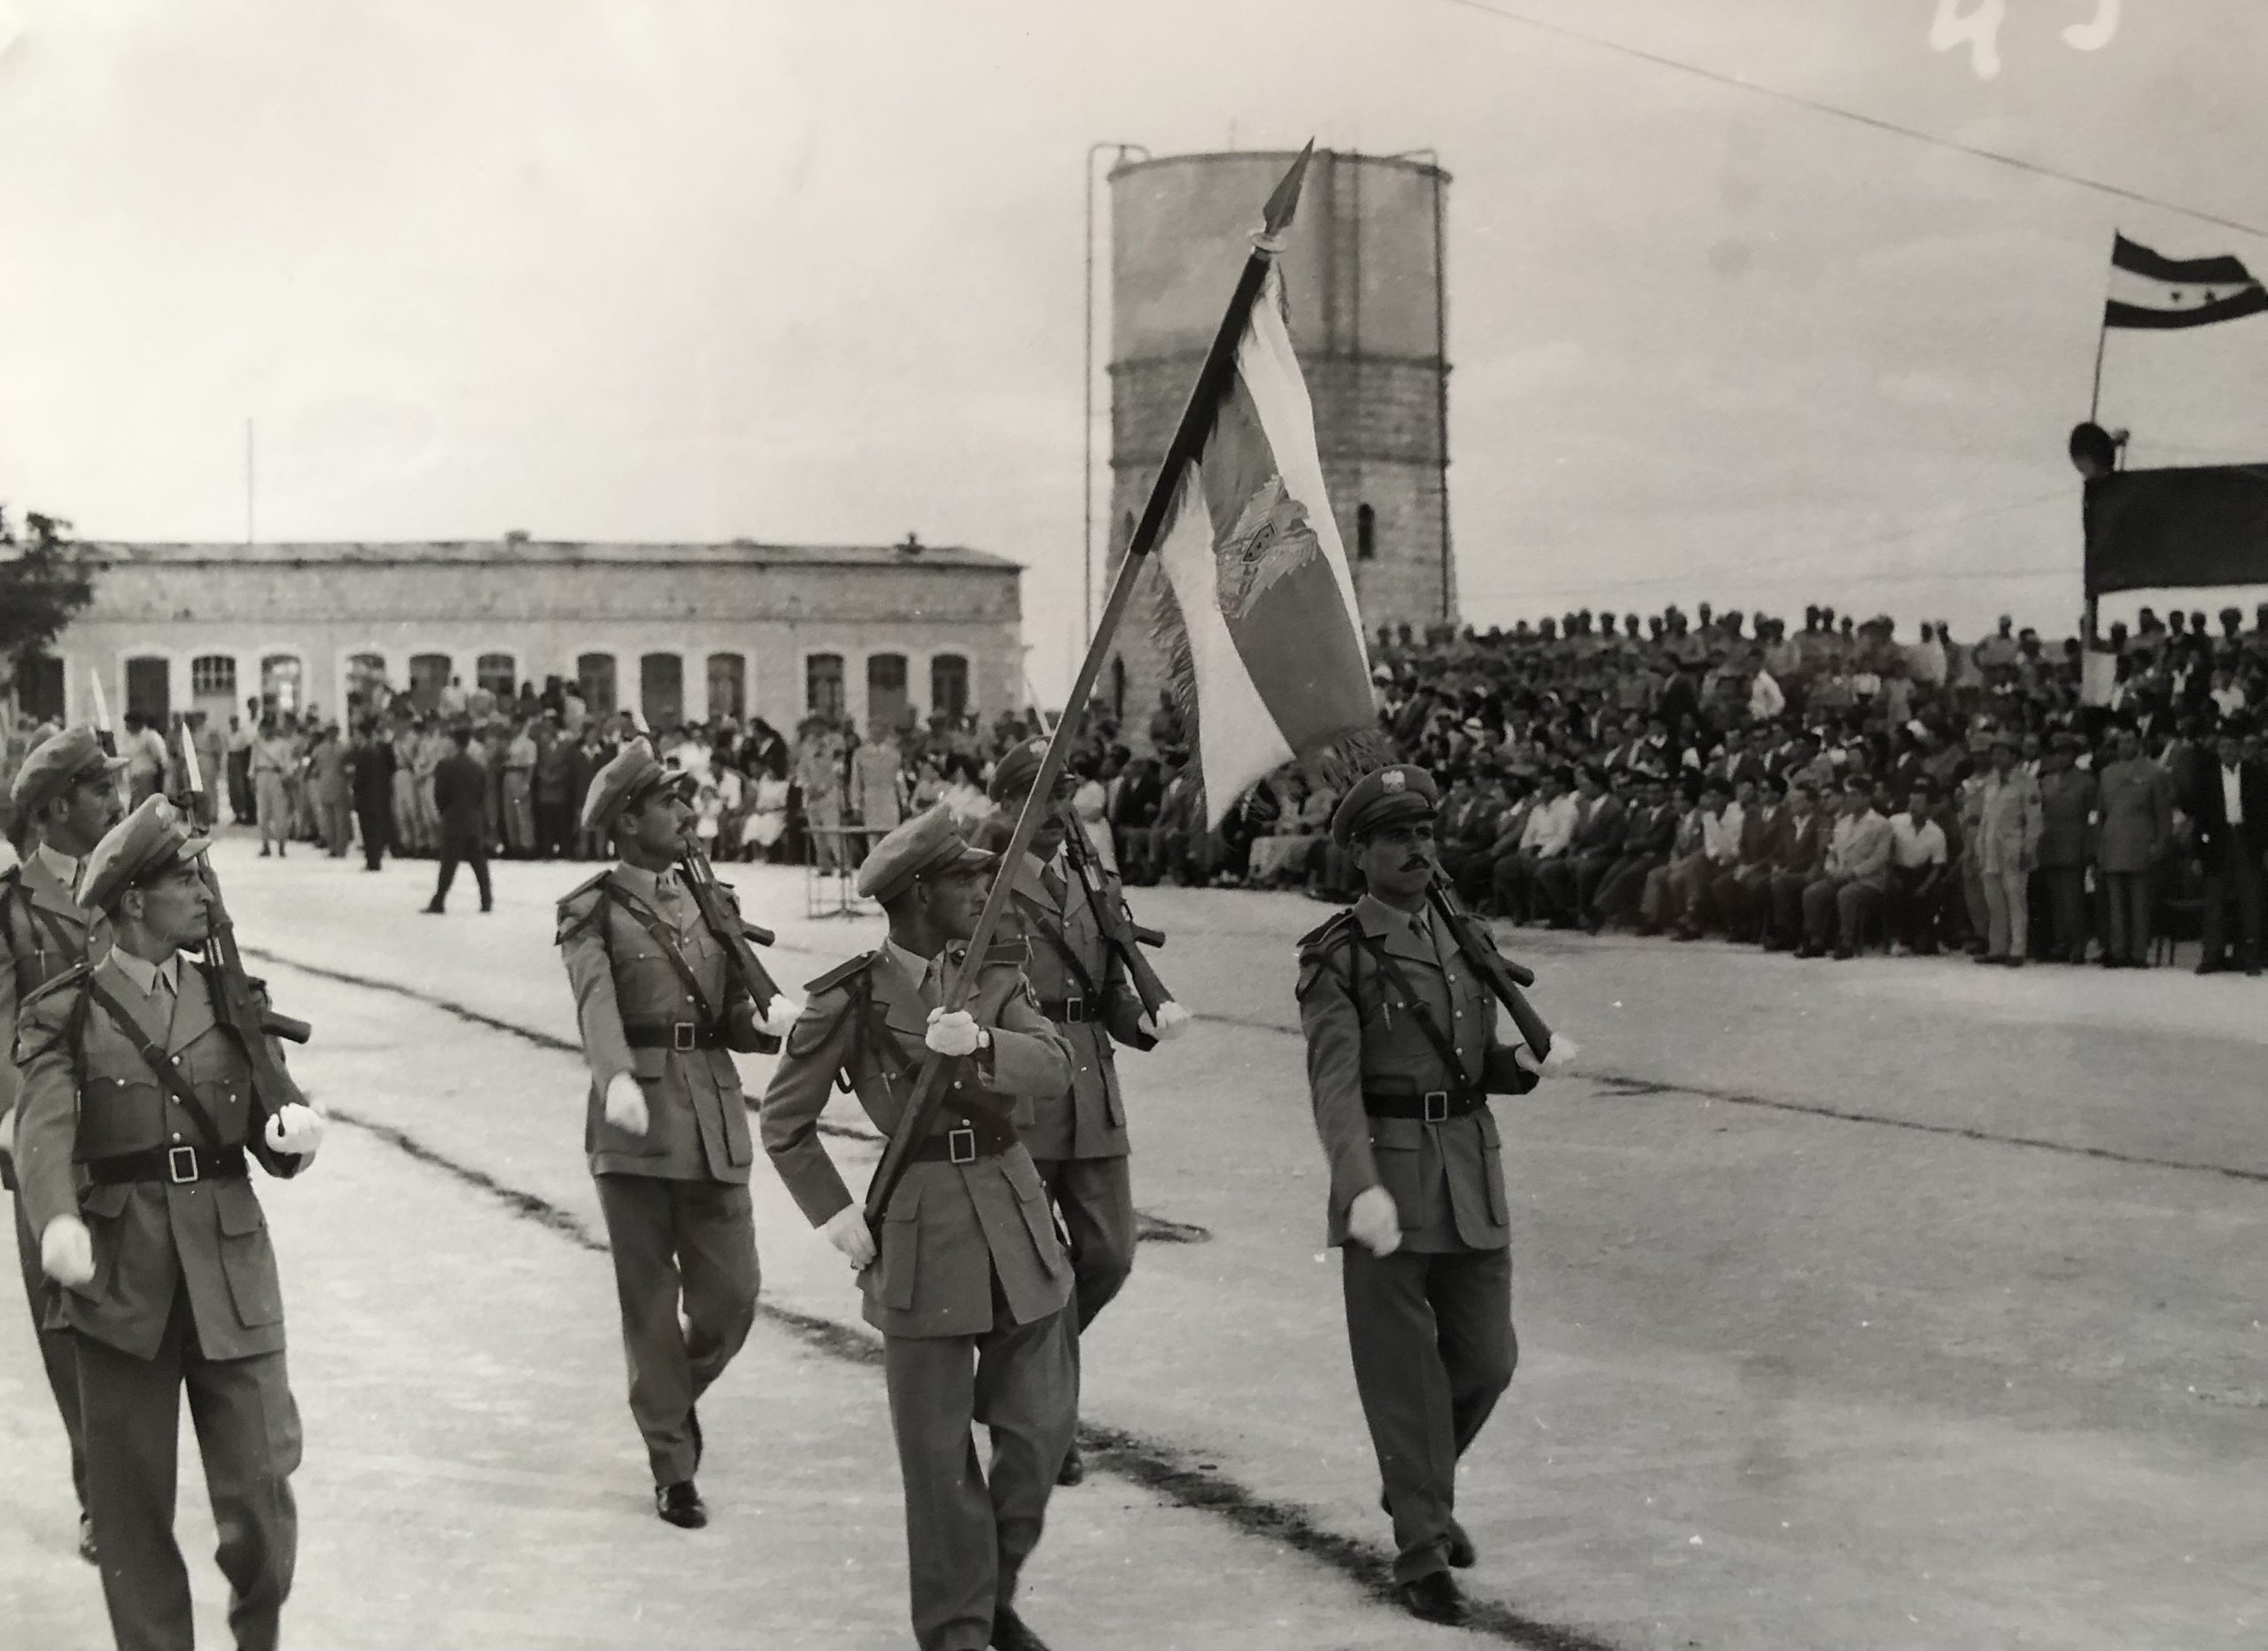 التاريخ السوري المعاصر - استعراض الوحدات في حفل تخريج ضباط الاحتياط في حلب عام 1958